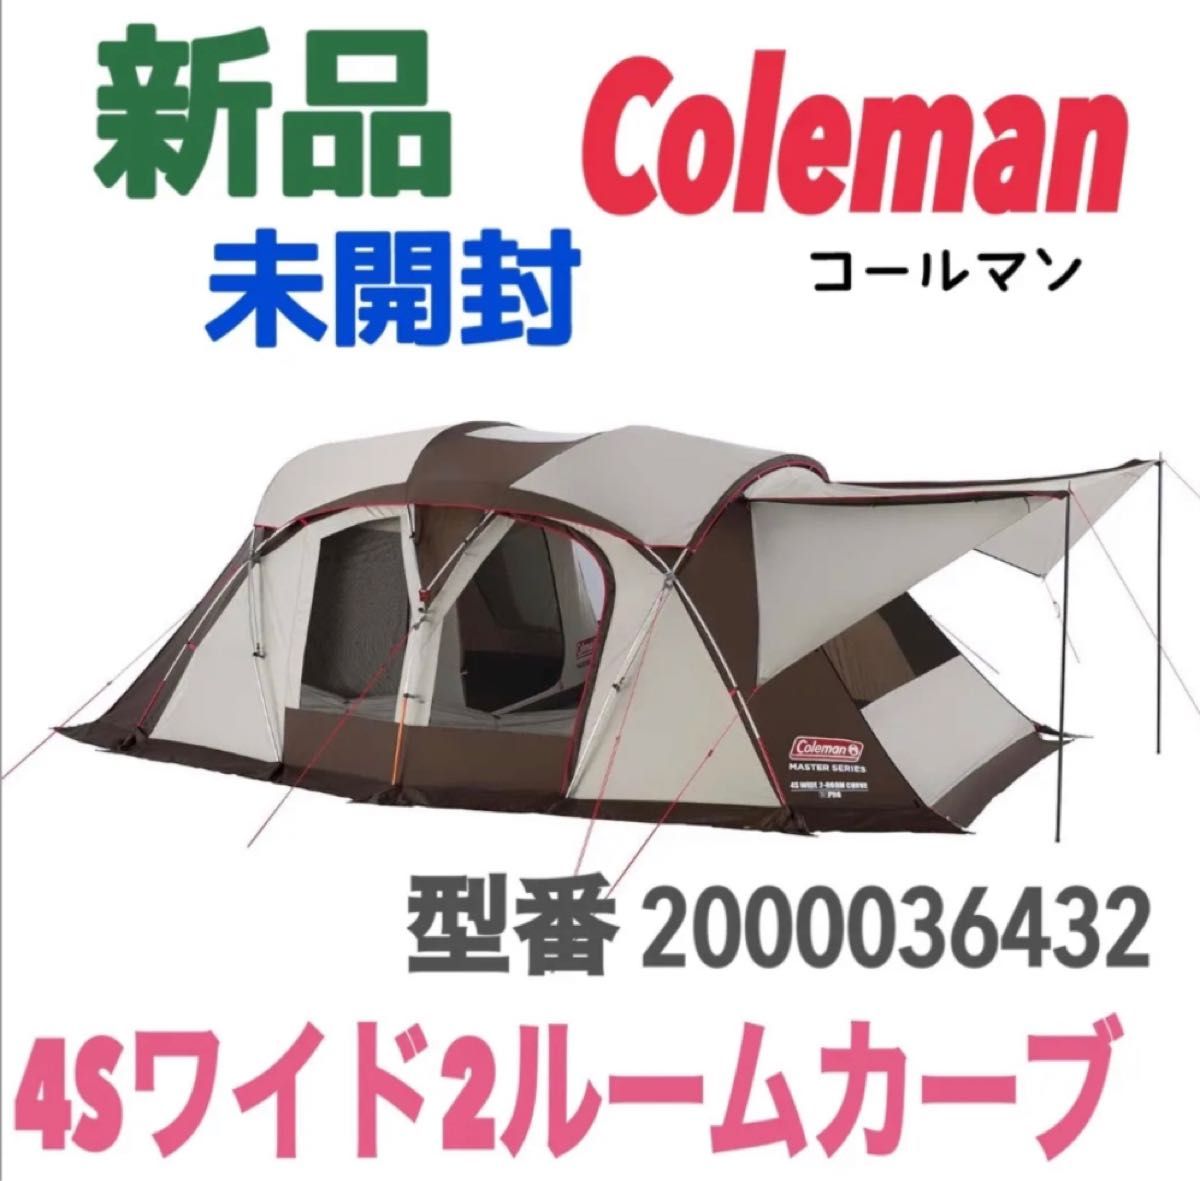 新品 未使用 未開封 Coleman コールマン マスターシリーズ 4Sワイド2ルームカーブ 2000036432 テント ギア